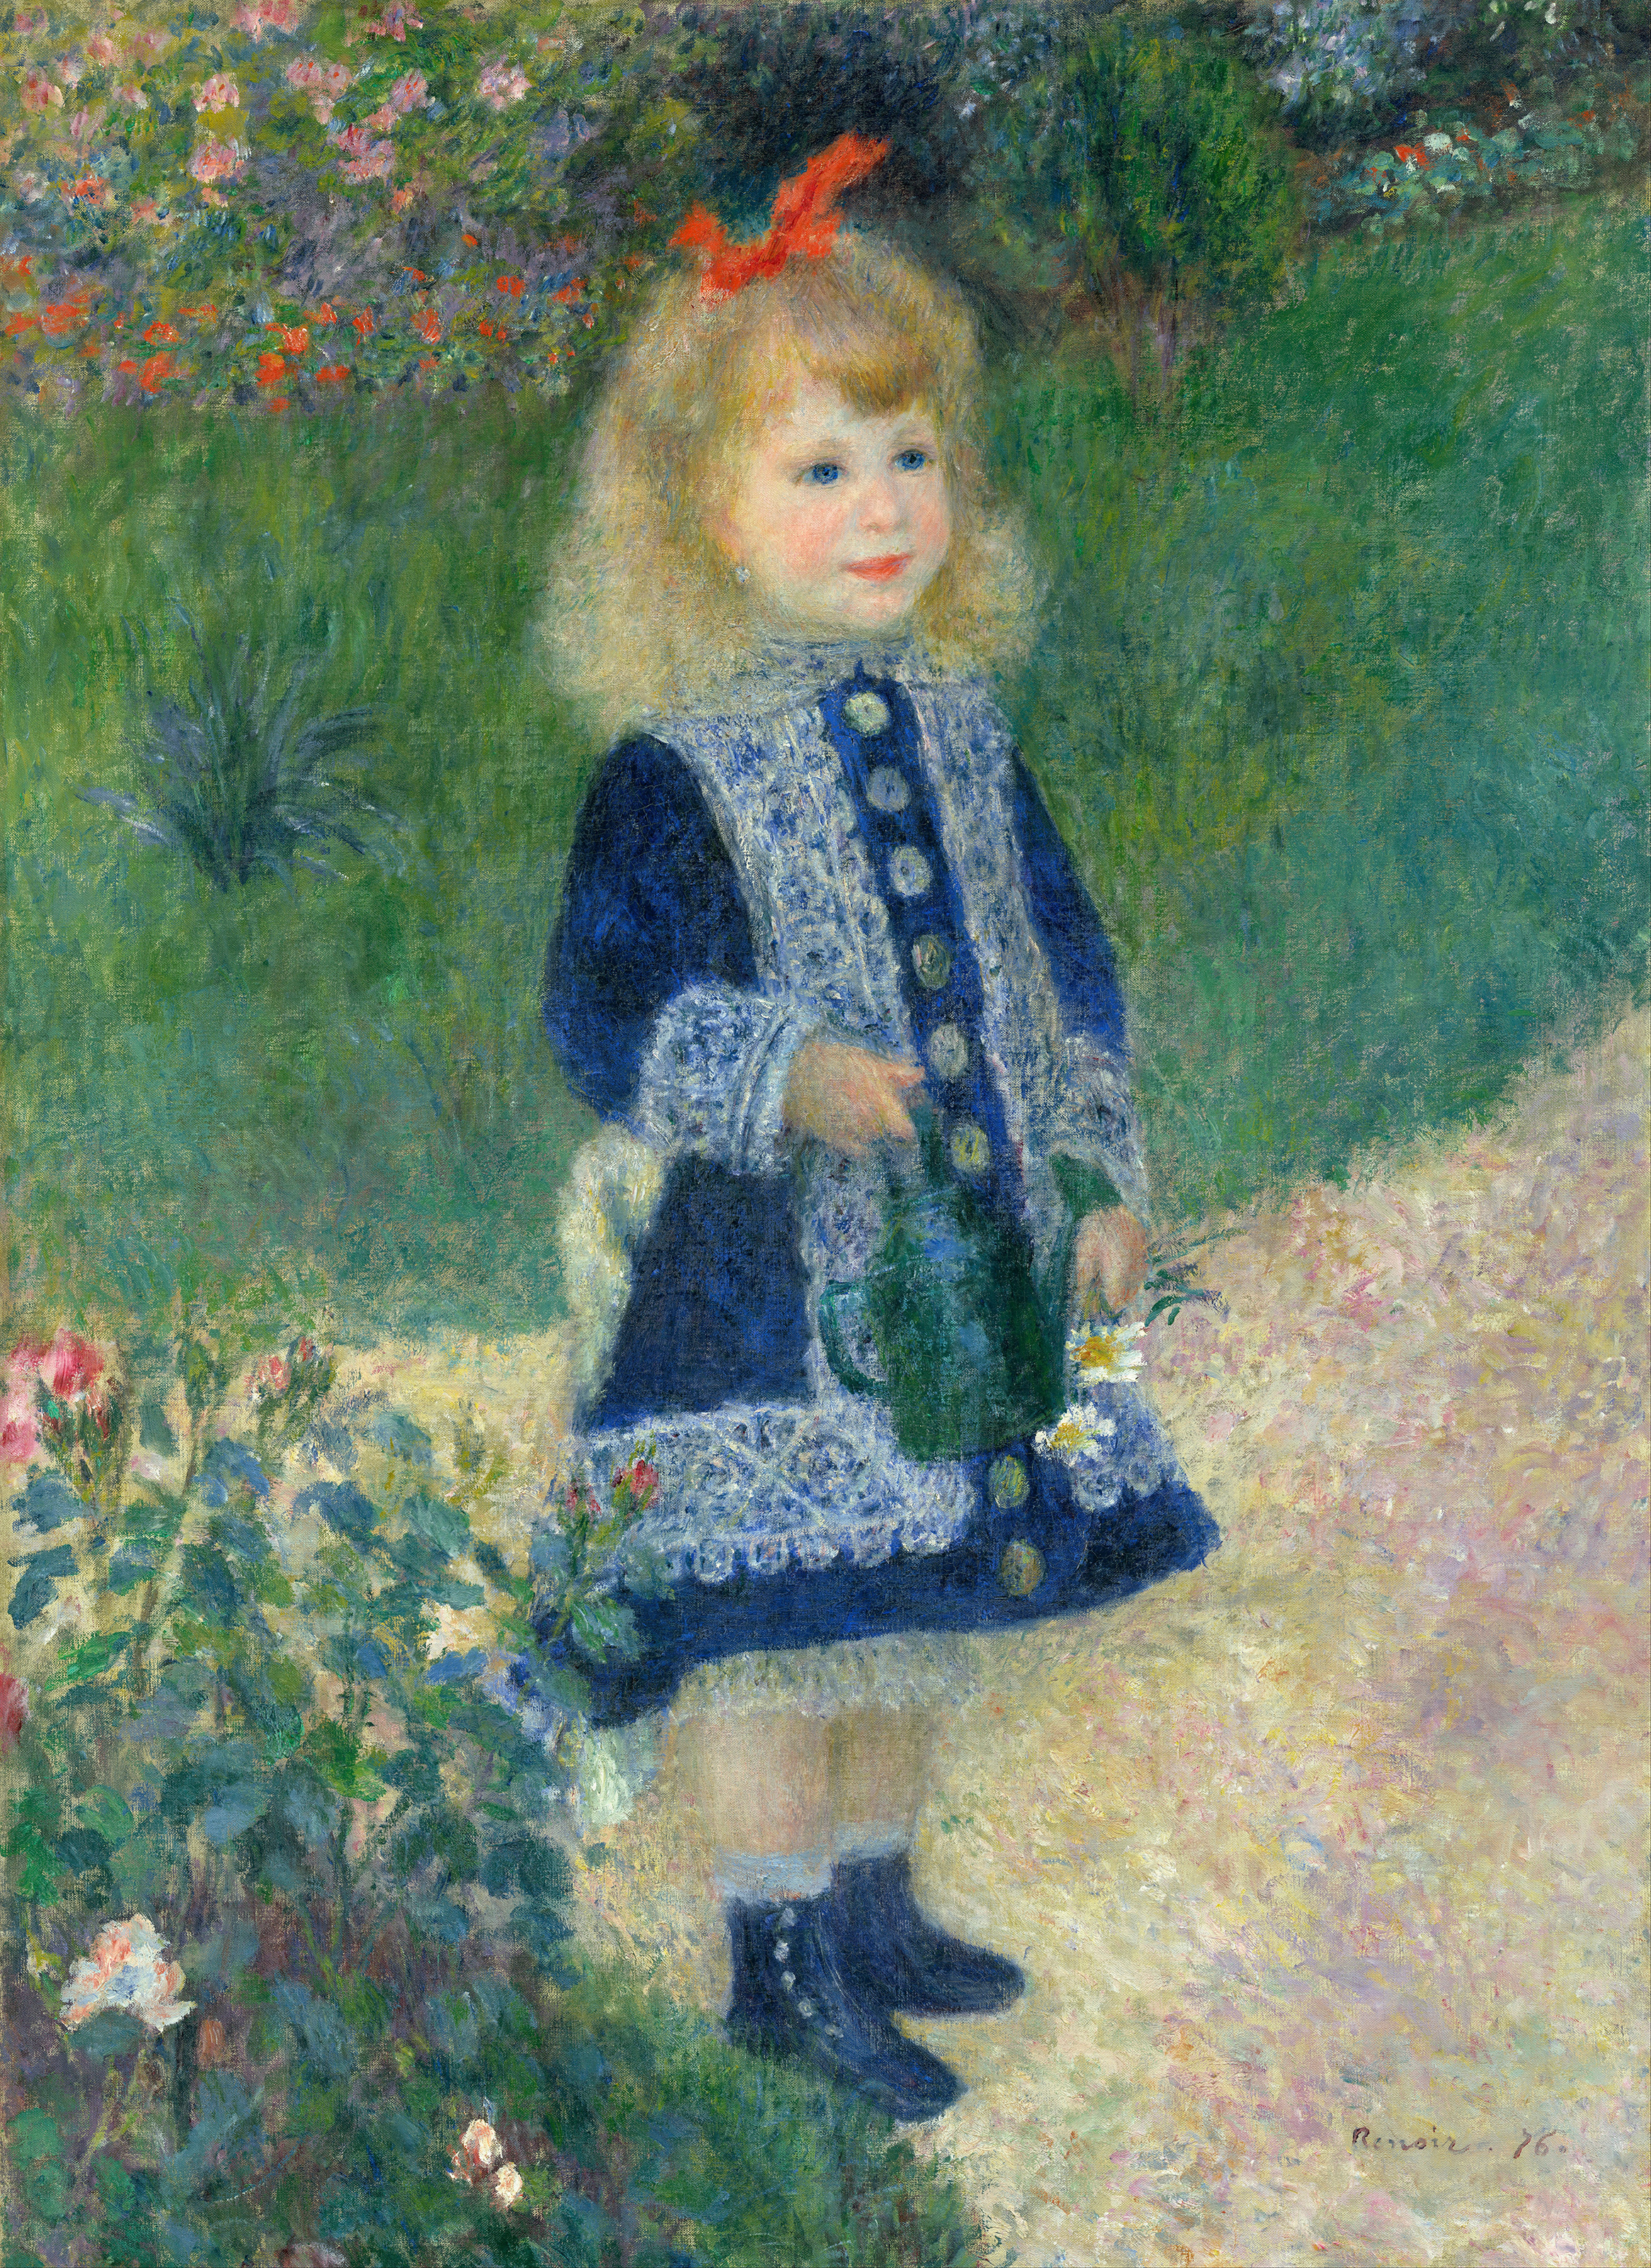 Niña con regadera by Pierre-Auguste Renoir - 1876 - 73 x 100 cm National Gallery of Art